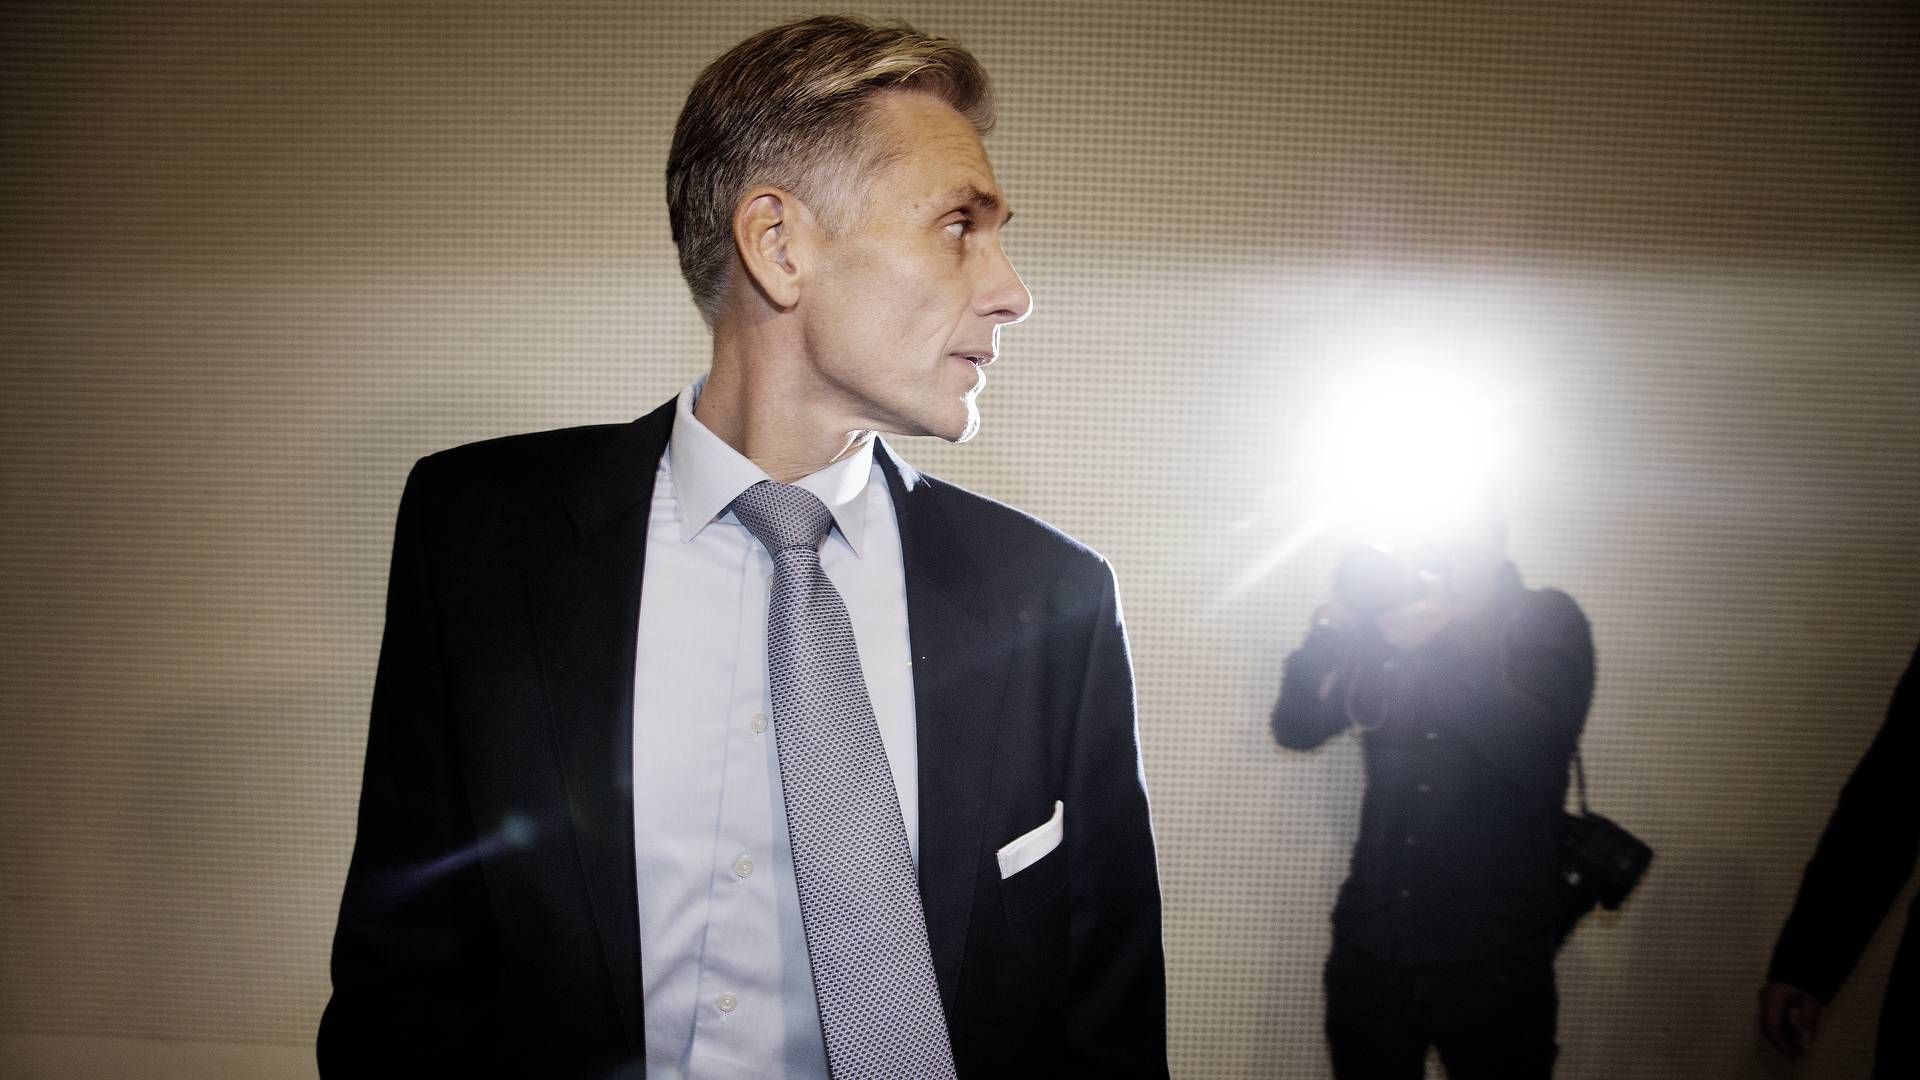 Thomas F. Borgen fratrådte i 2018 som topchef i Danske Bank på grund af hvidvasksagen. | Foto: Martin Lehmann/Politiken